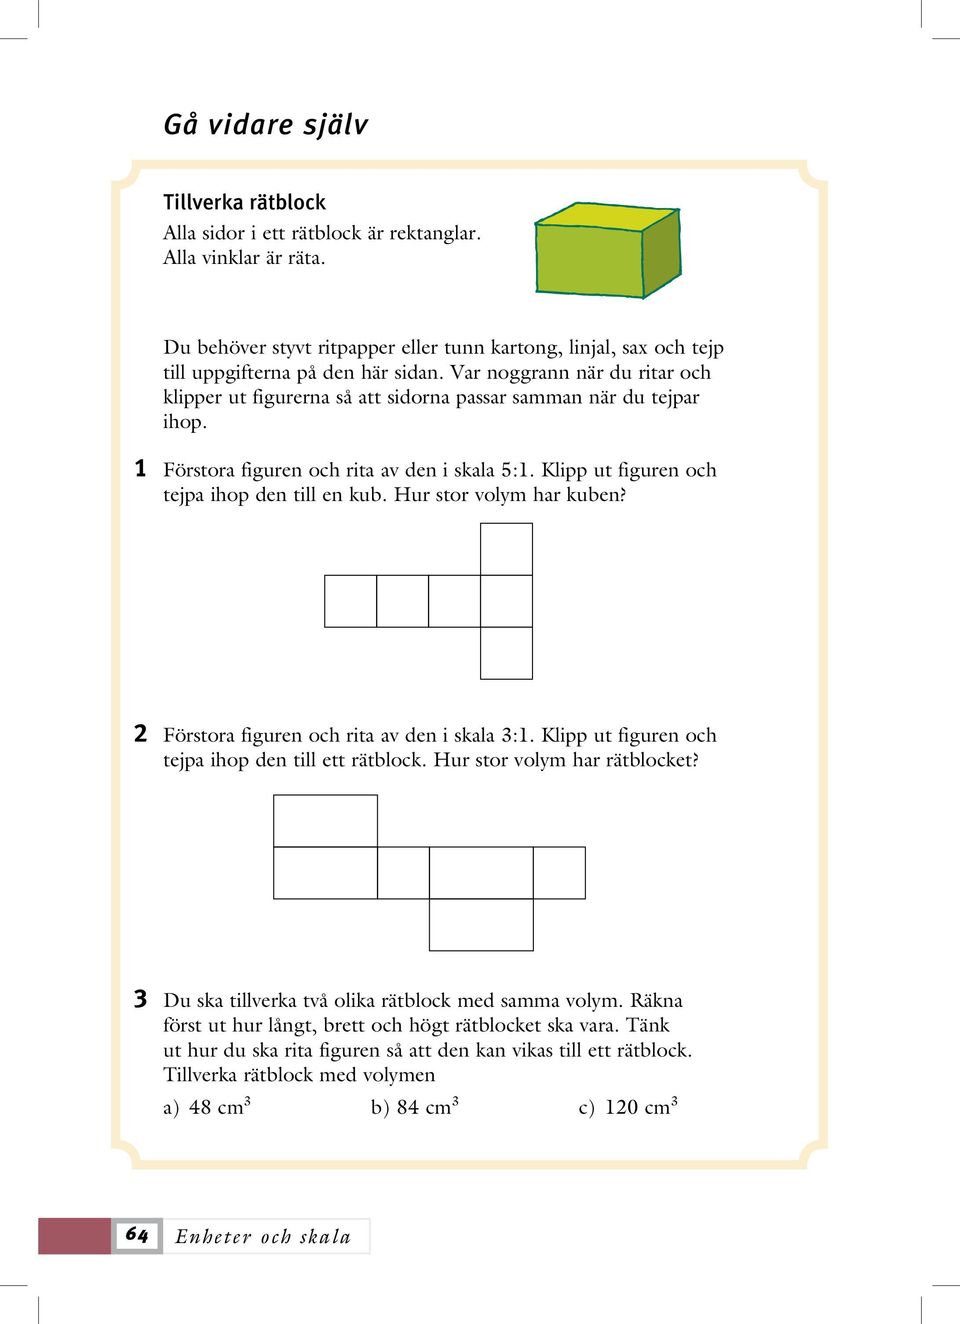 Hur stor volym har kuben? 2 Förstora figuren och rita av den i skala 3:1. Klipp ut figuren och tejpa ihop den till ett rätblock. Hur stor volym har rätblocket?